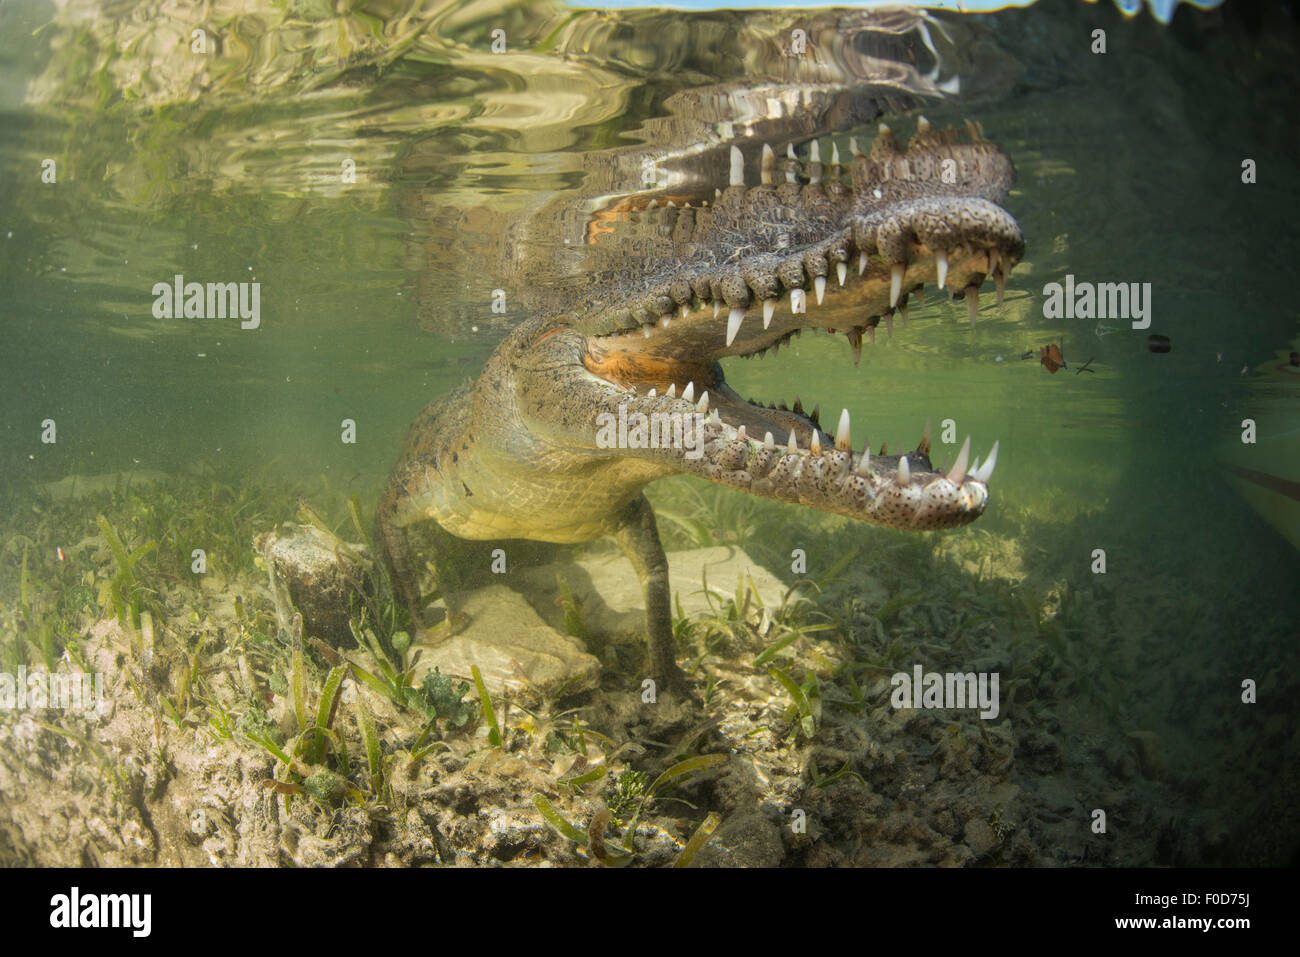 Cocodrilo Americano (Crocodylus acutus) en áreas de manglar con la boca abierta mostrando los dientes, Jardines de la Reina, Cuba. Foto de stock